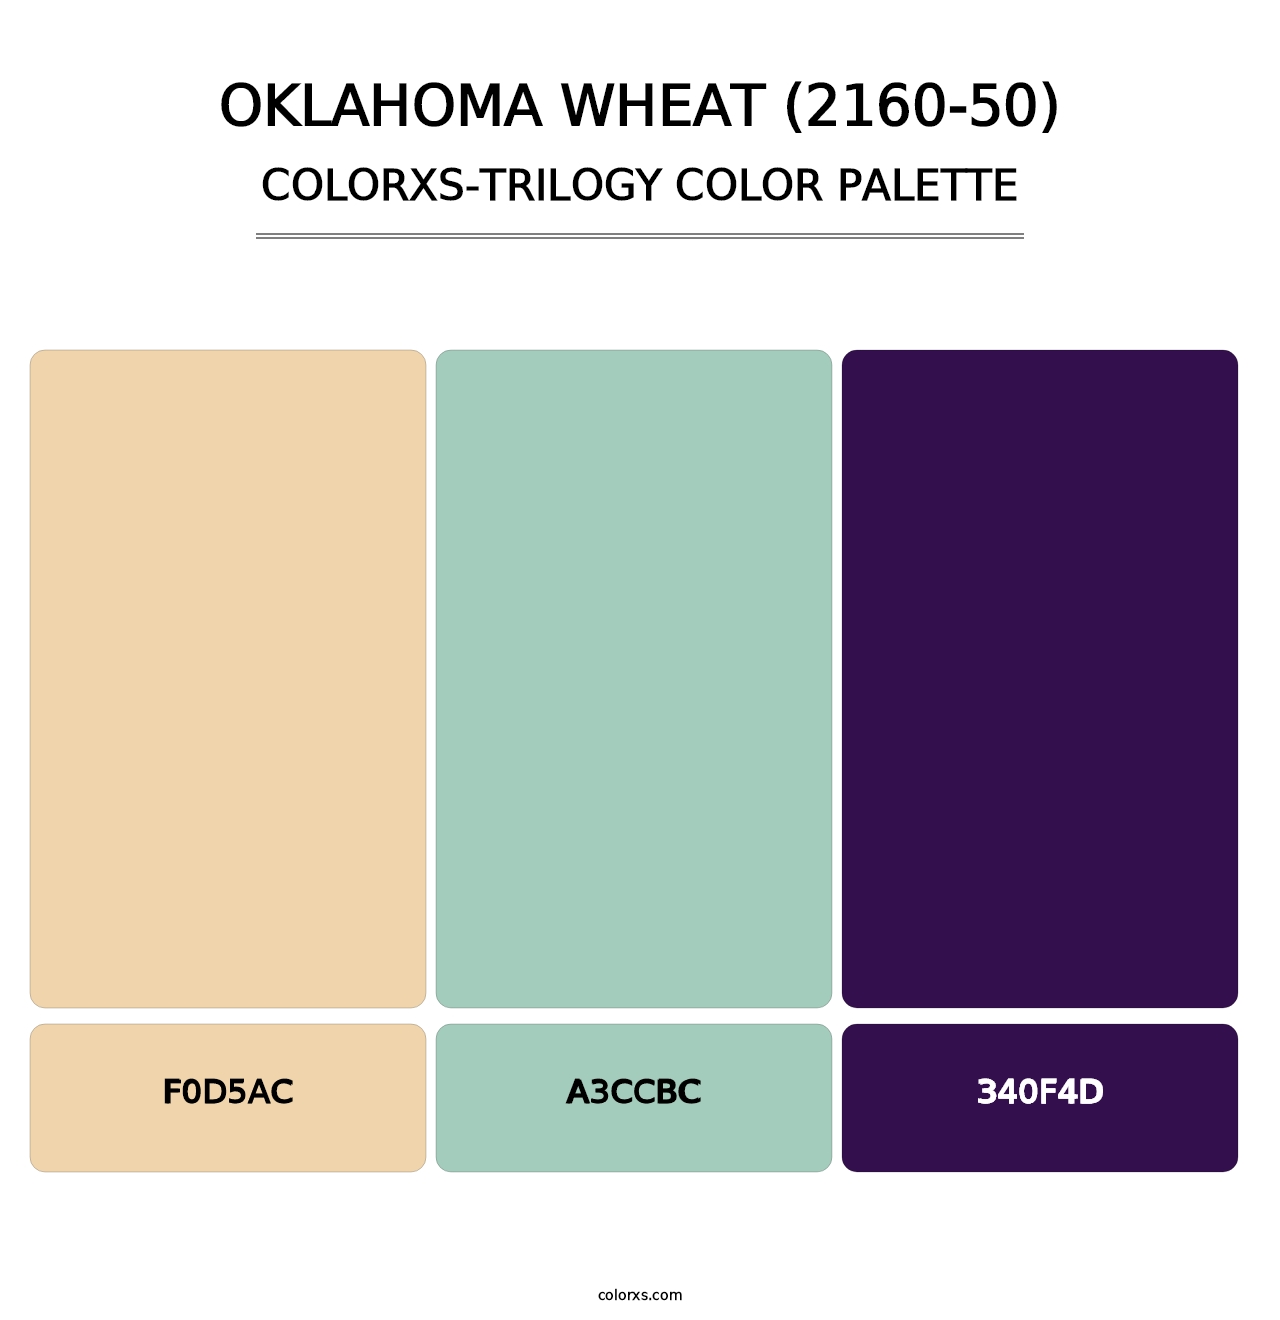 Oklahoma Wheat (2160-50) - Colorxs Trilogy Palette